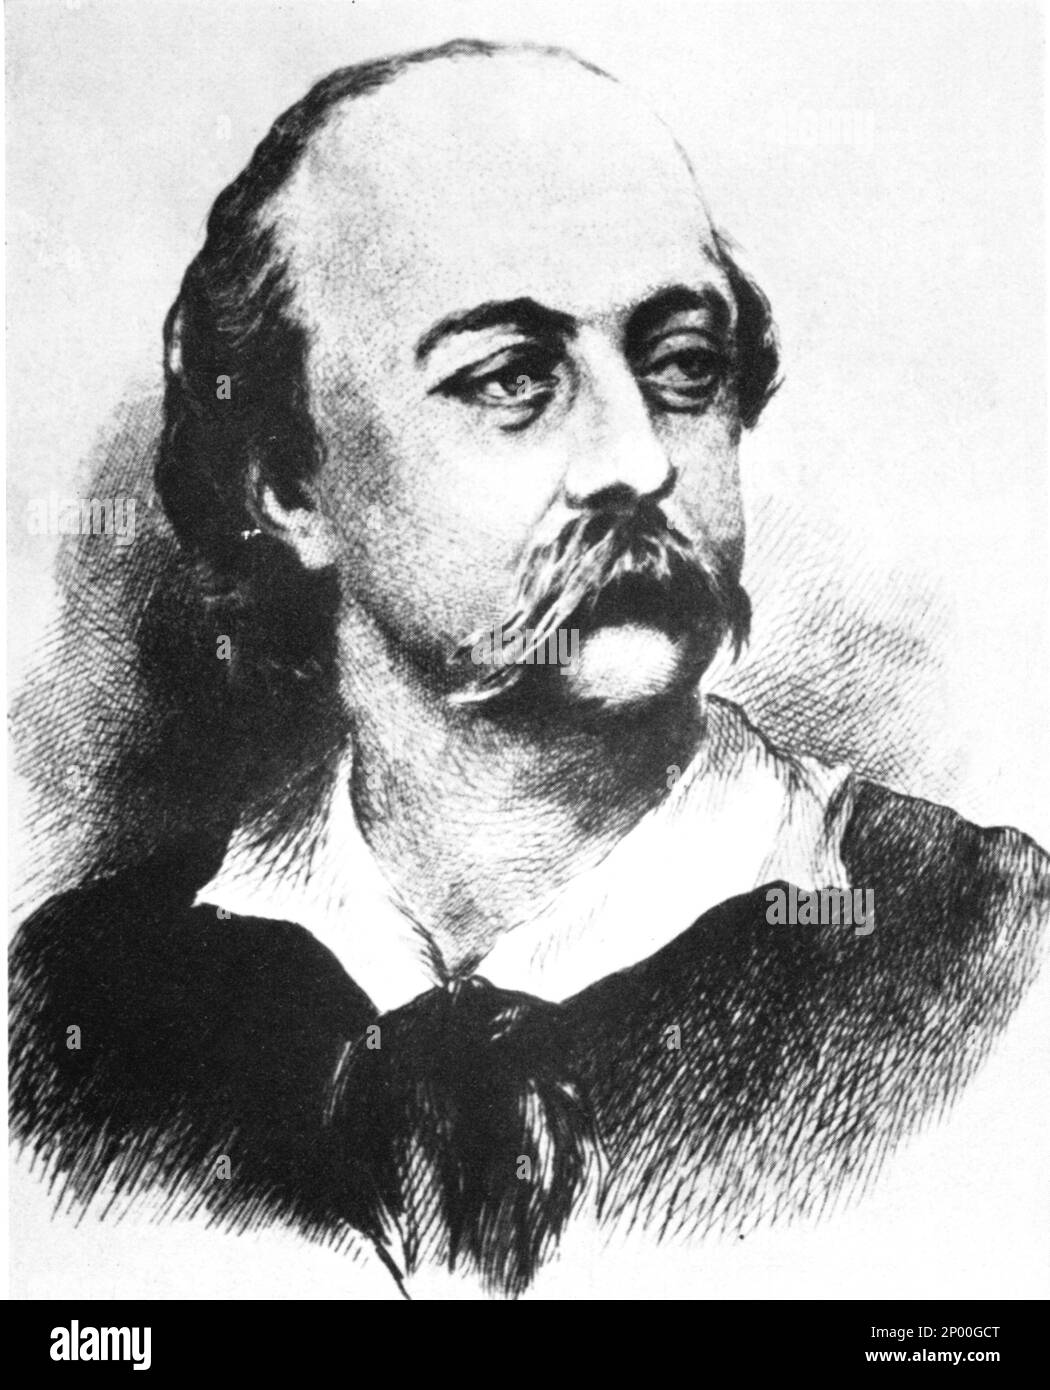 El escritor francés GUSTAVE FLAUBERT ( 1821 - 1880 ) , autor de roman MADAME BOVARY ( 1857 ) - SCRITTORE - letterato - LETTERATURA - LITERATURA - ritratto - ROMANTICISMO - ritratto - collar - colletto - letterato - ritratto - incisione - baffi - bigote - stempiatura - uomo stempiato - timmed at temple ---- Archivio GBB Foto de stock